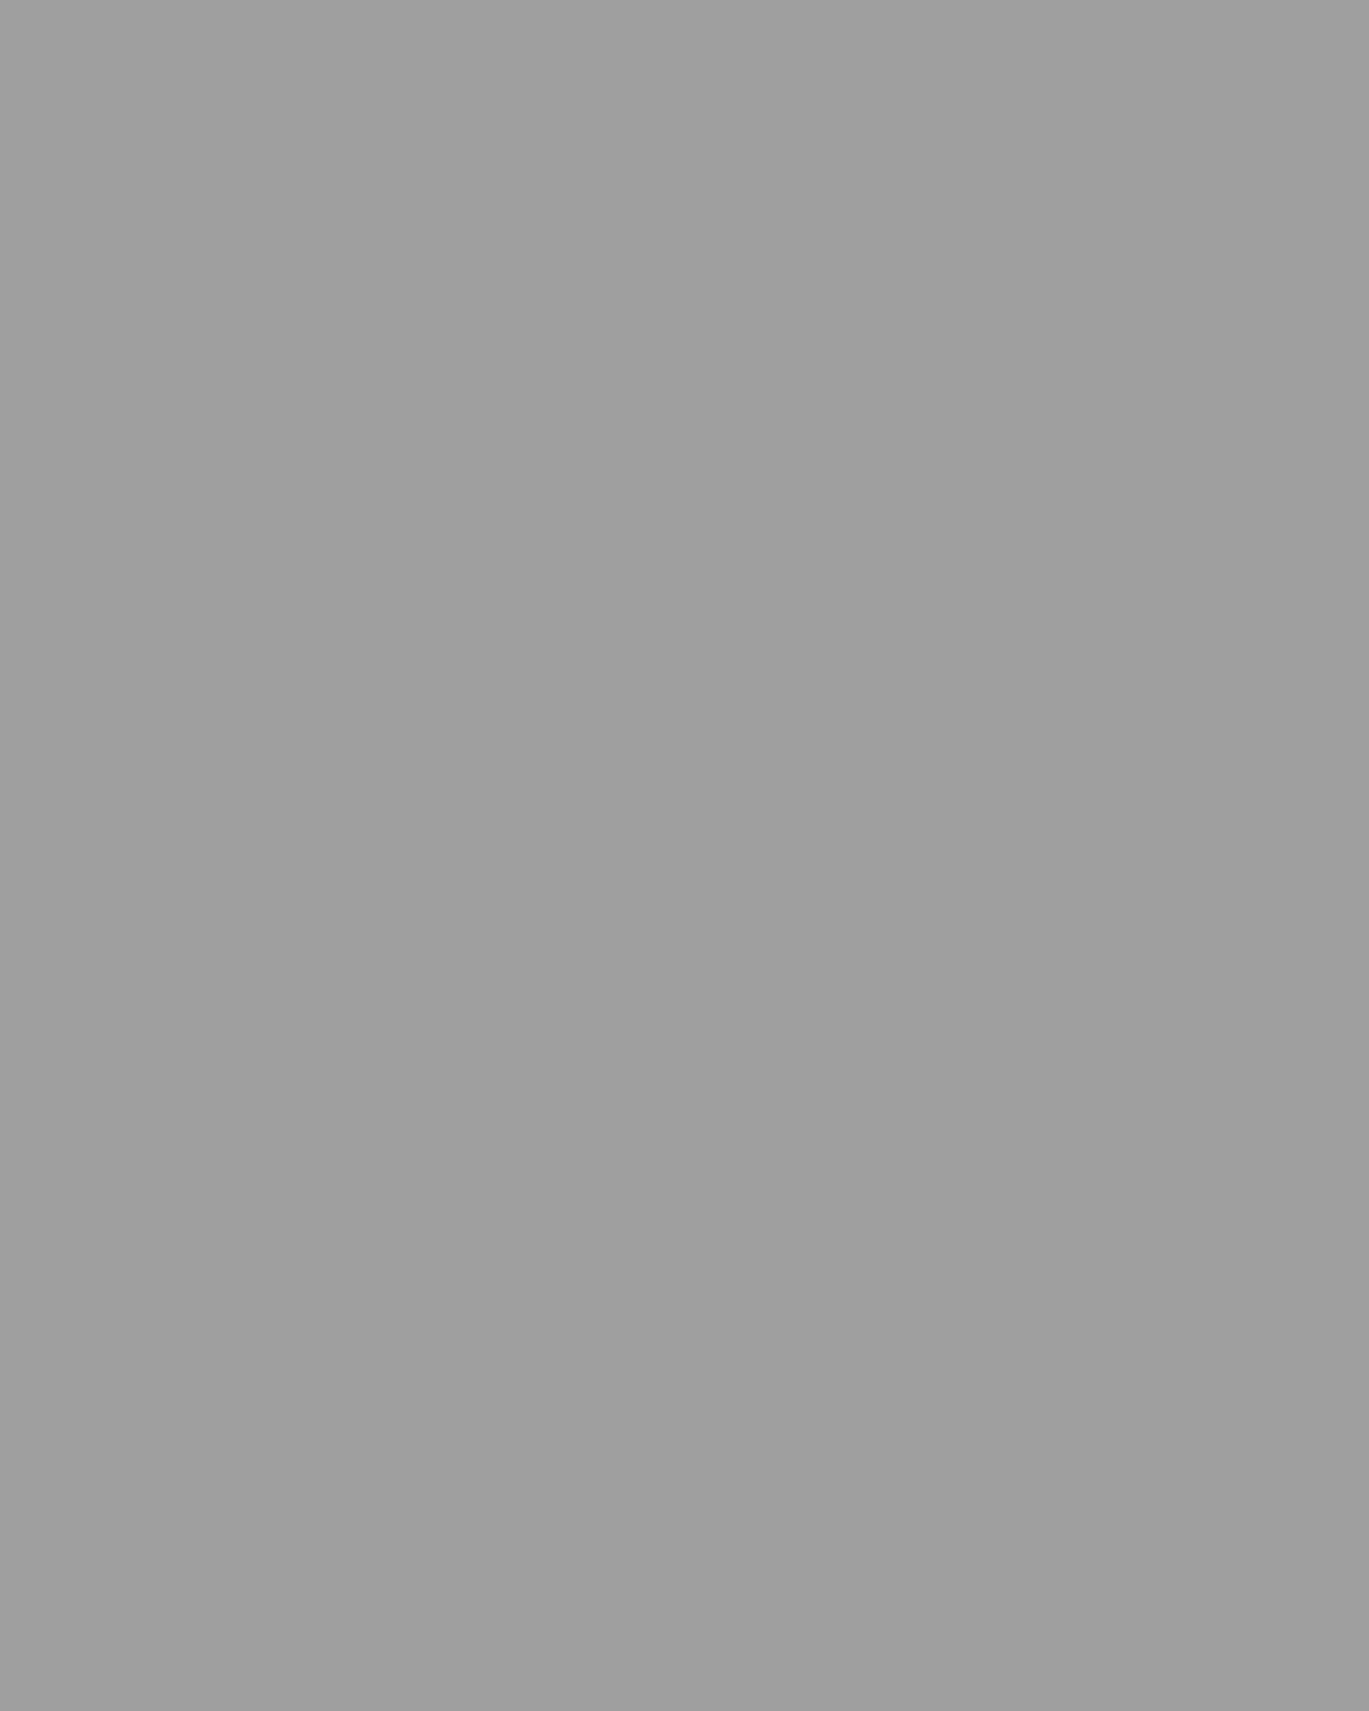 Композитор Модест Мусоргский. 1874. Санкт-Петербург. Фотография: А.Ф. Лоренц / Русский национальный музей музыки, Москва